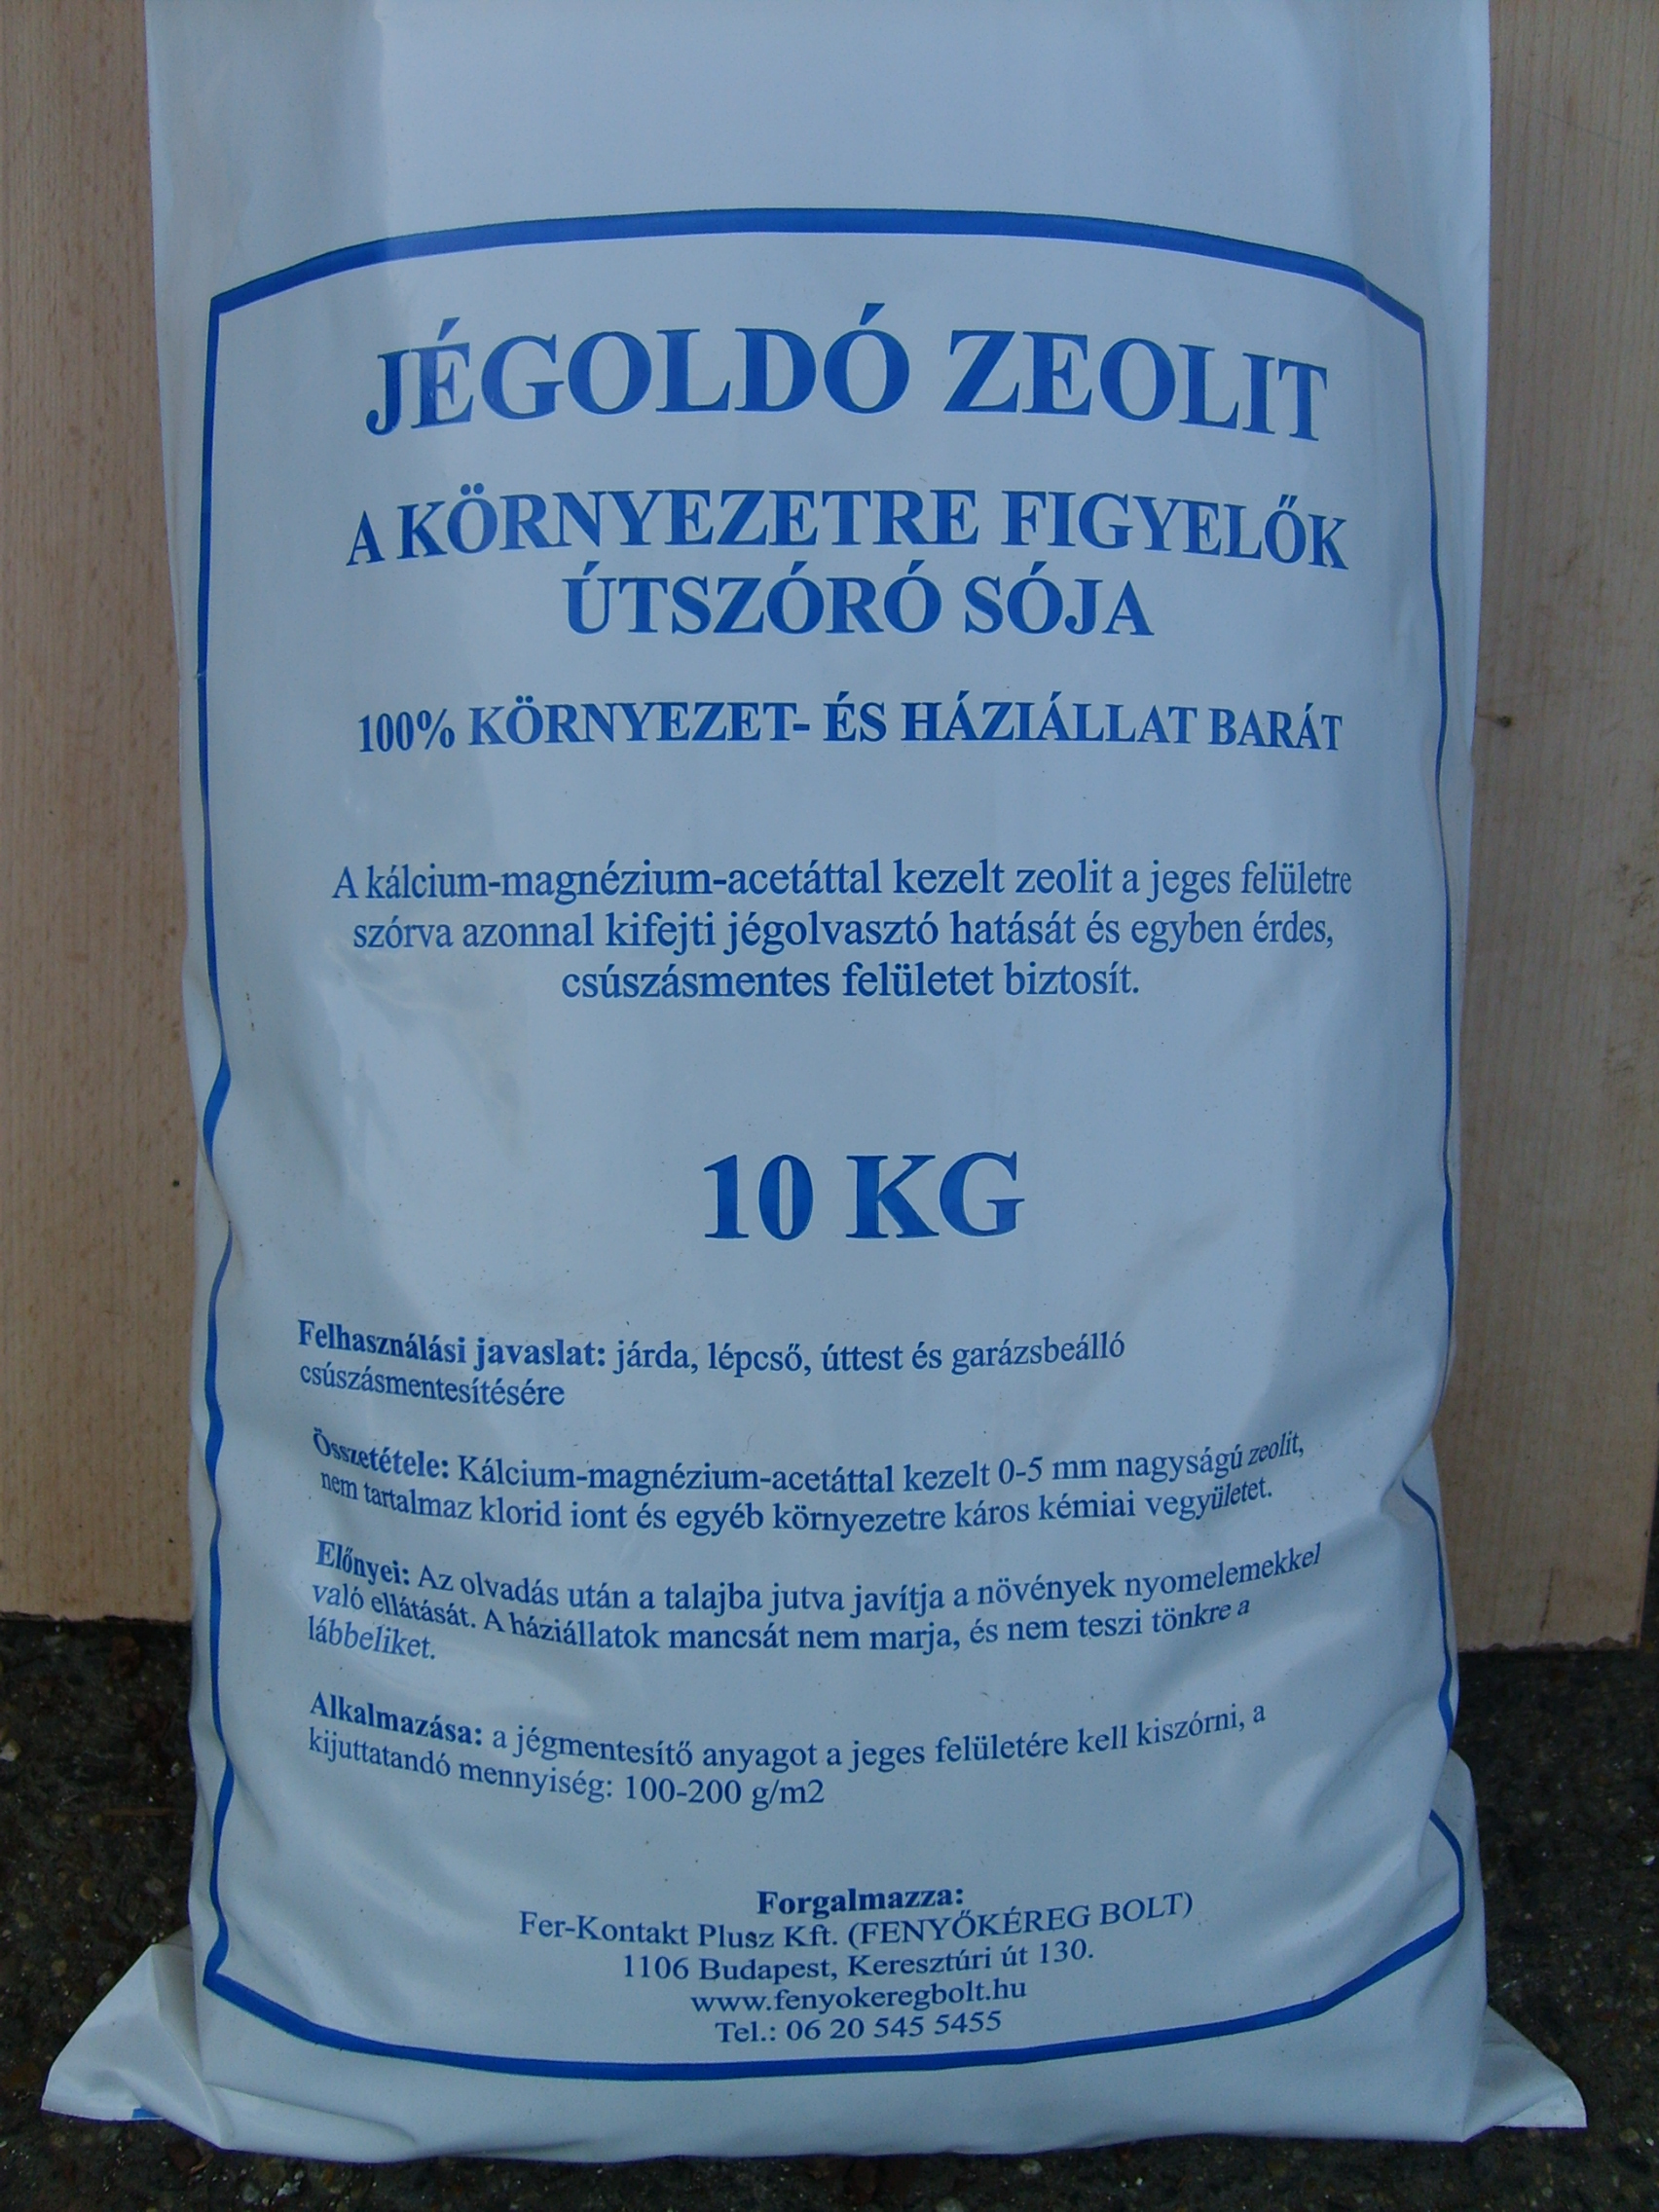 De-icing zeolite 10 kg